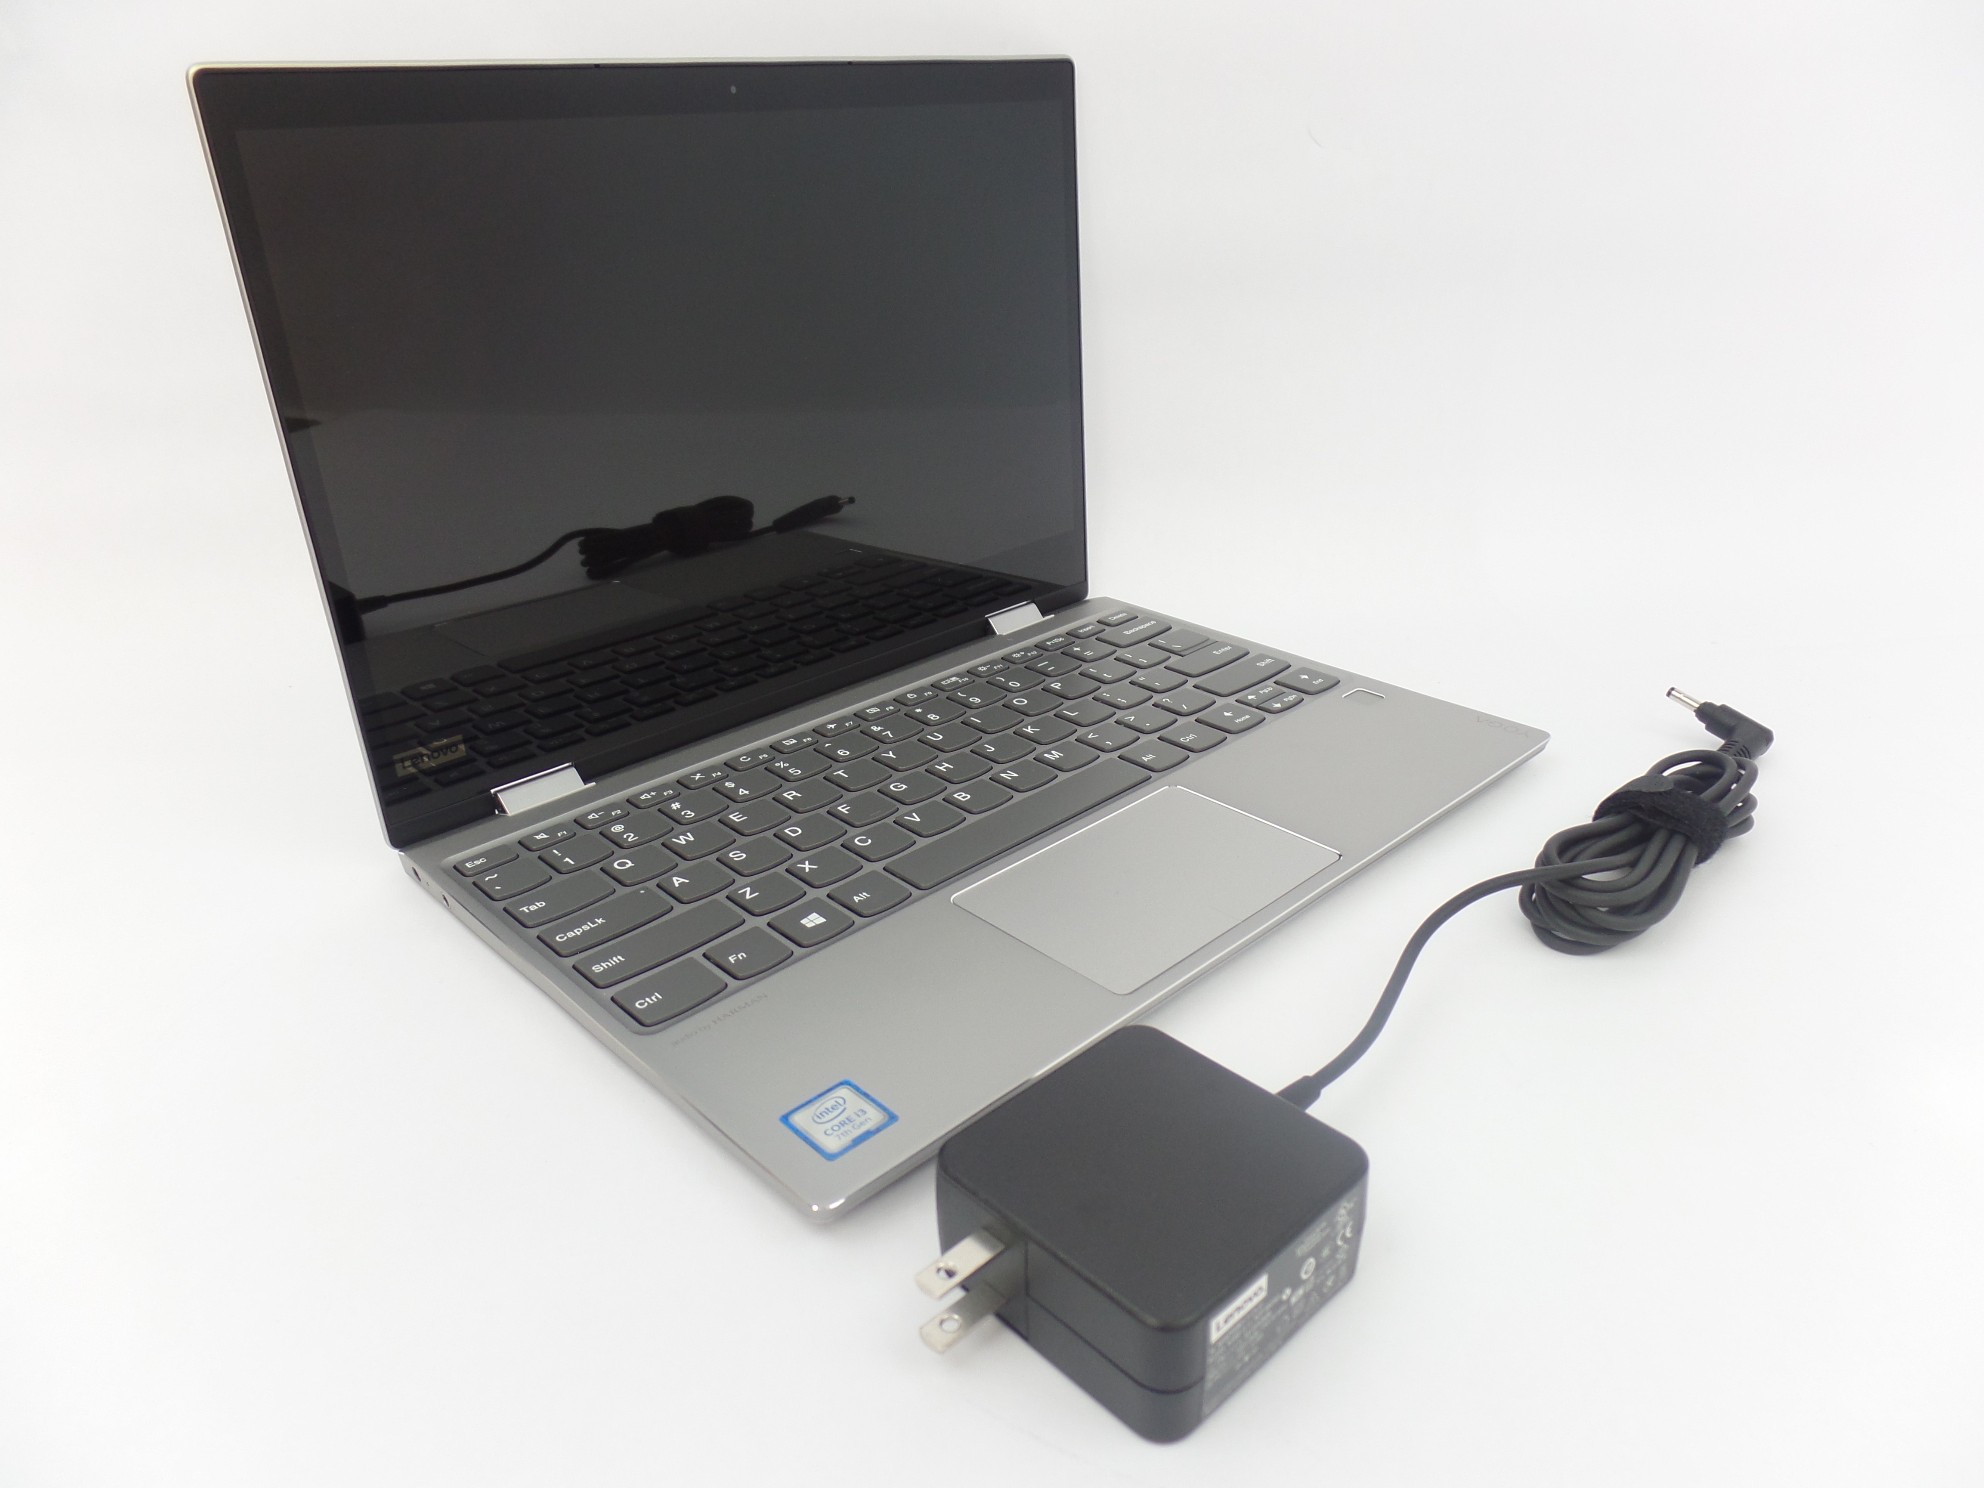 Lenovo IdeaPad Yoga 720-12IKB 12" FHD Touch i3-7100U 2.4GHz 4GB 128GB SSD W10H U